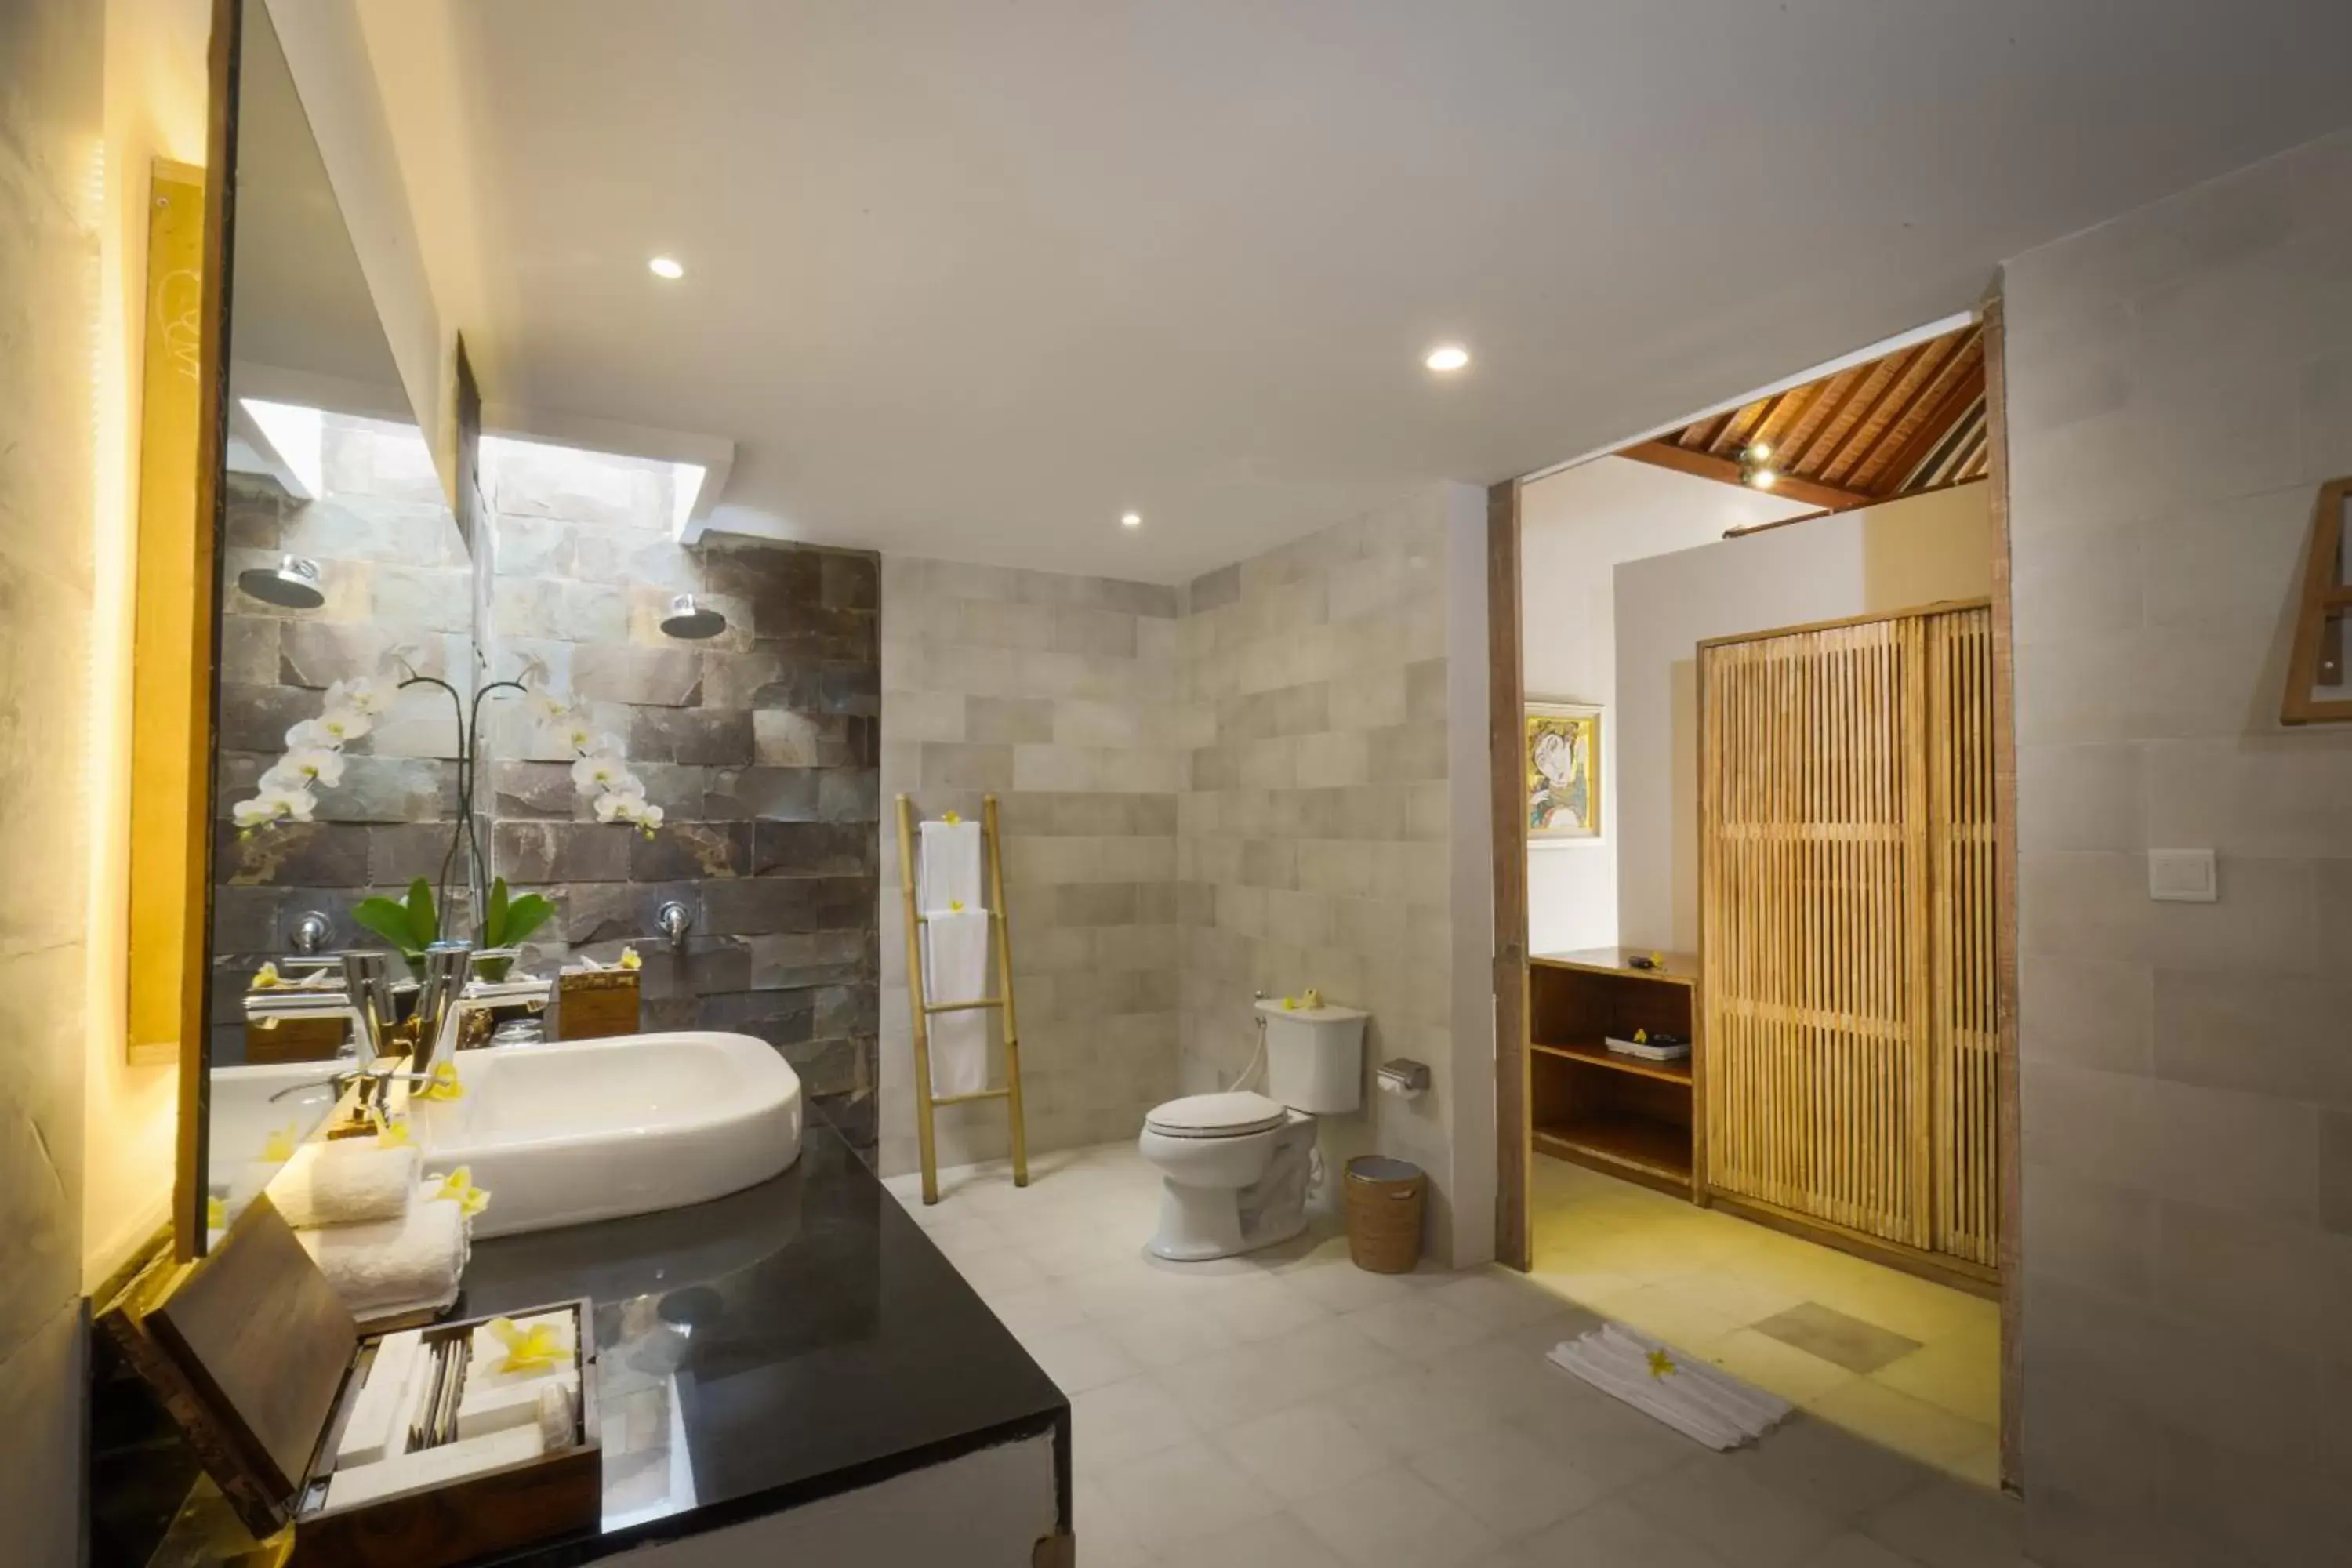 Area and facilities, Bathroom in Purana Boutique Resort